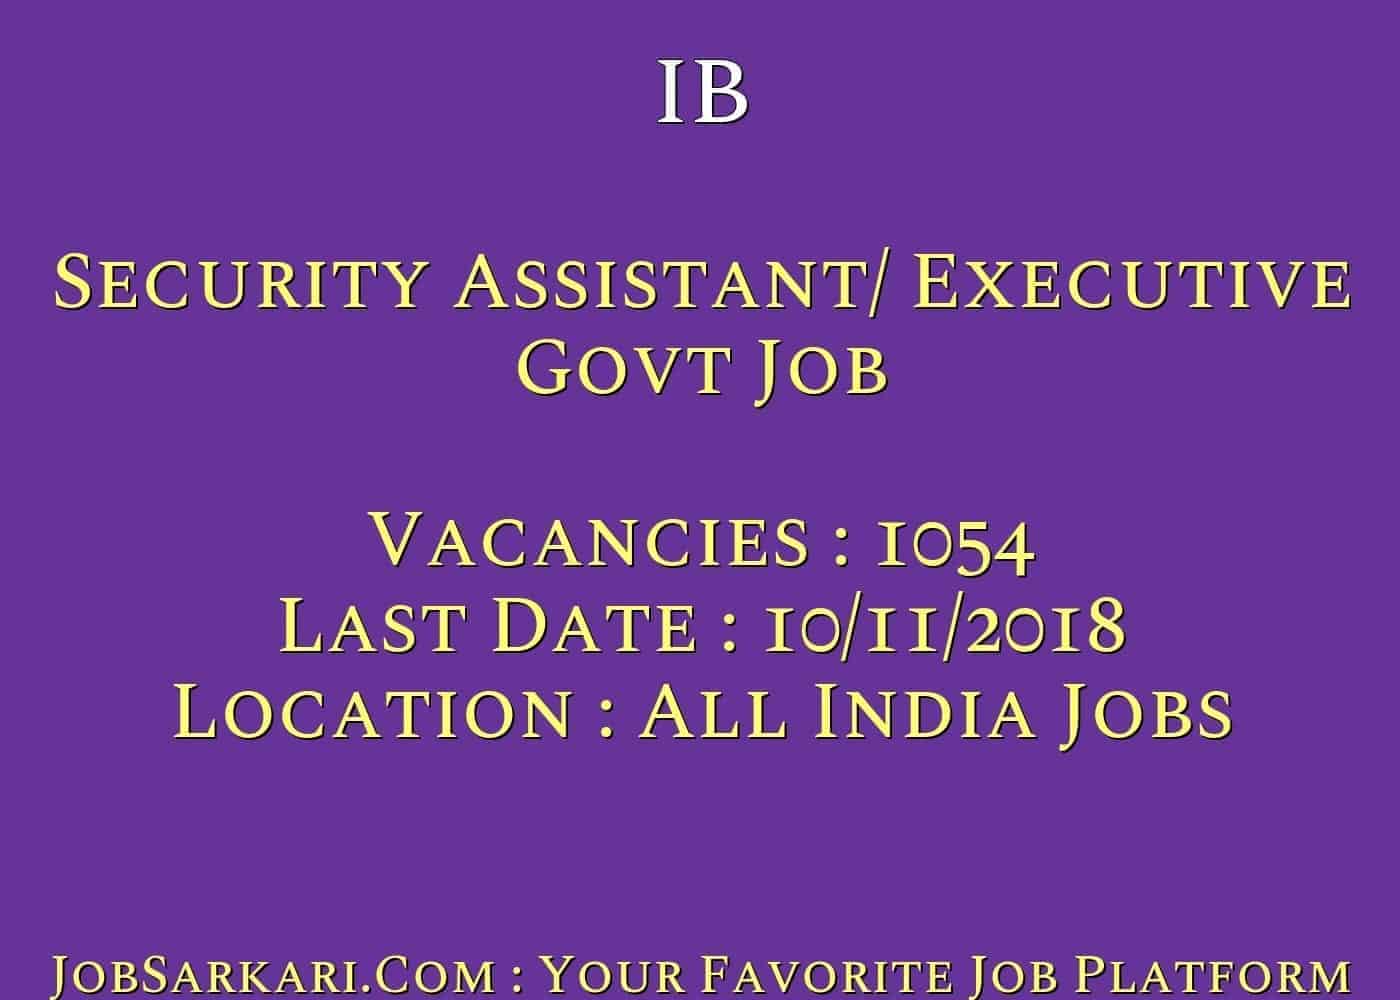 IB Recruitment 2018 For Security Assistant/ Executive Govt Job